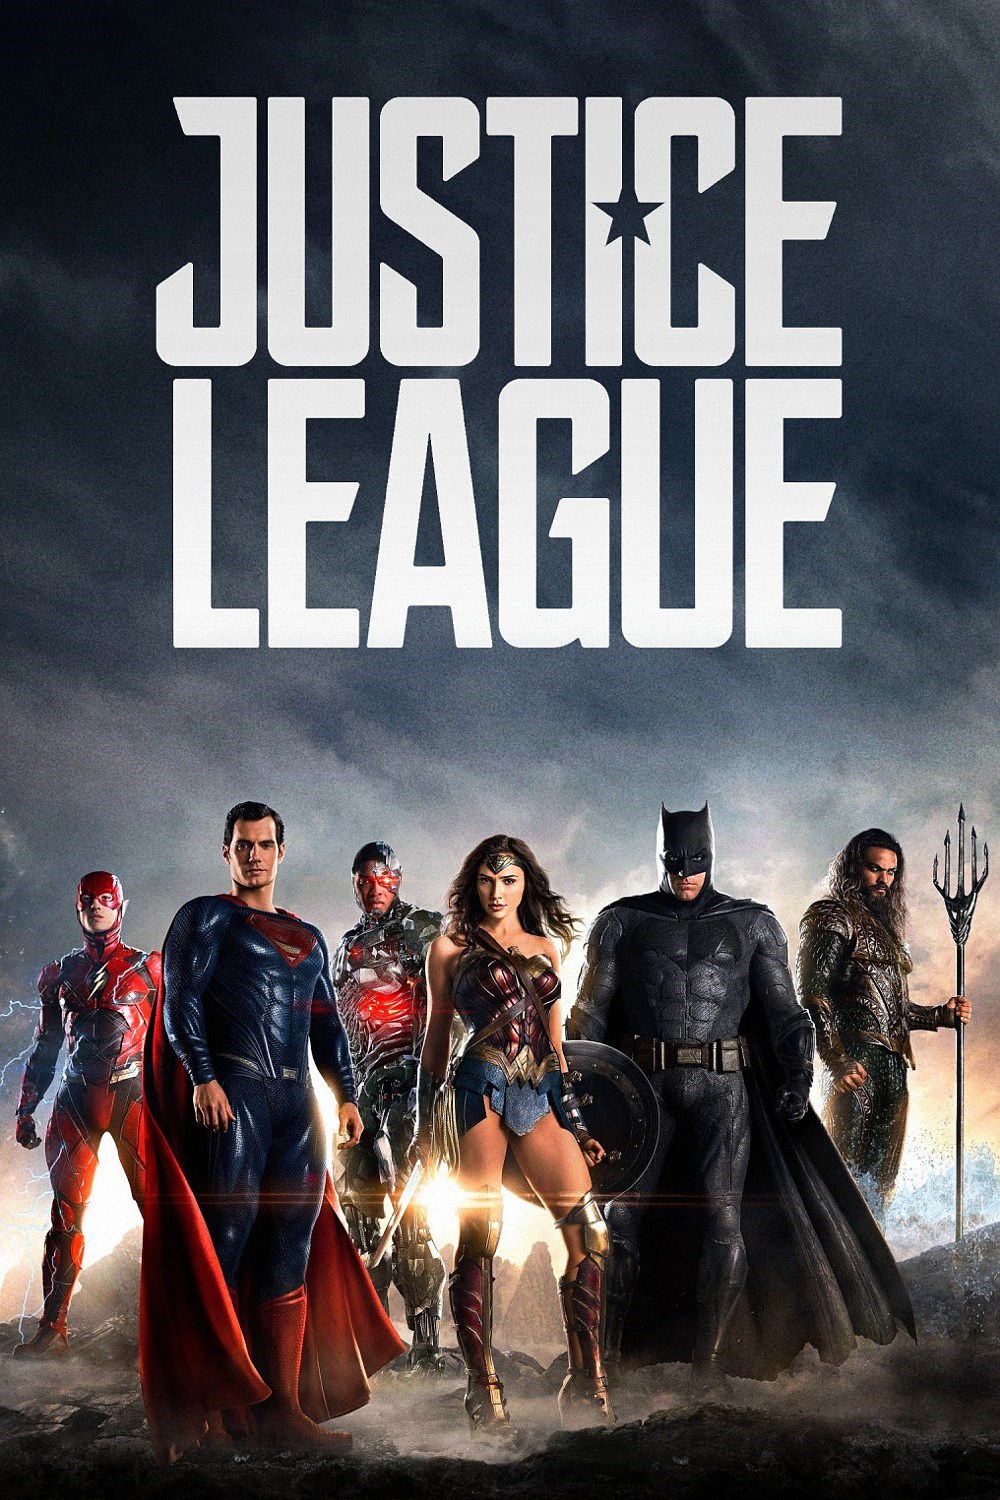 Justice League Part 1 Movie Trailer 2017 Subtitle Indonesia - Full